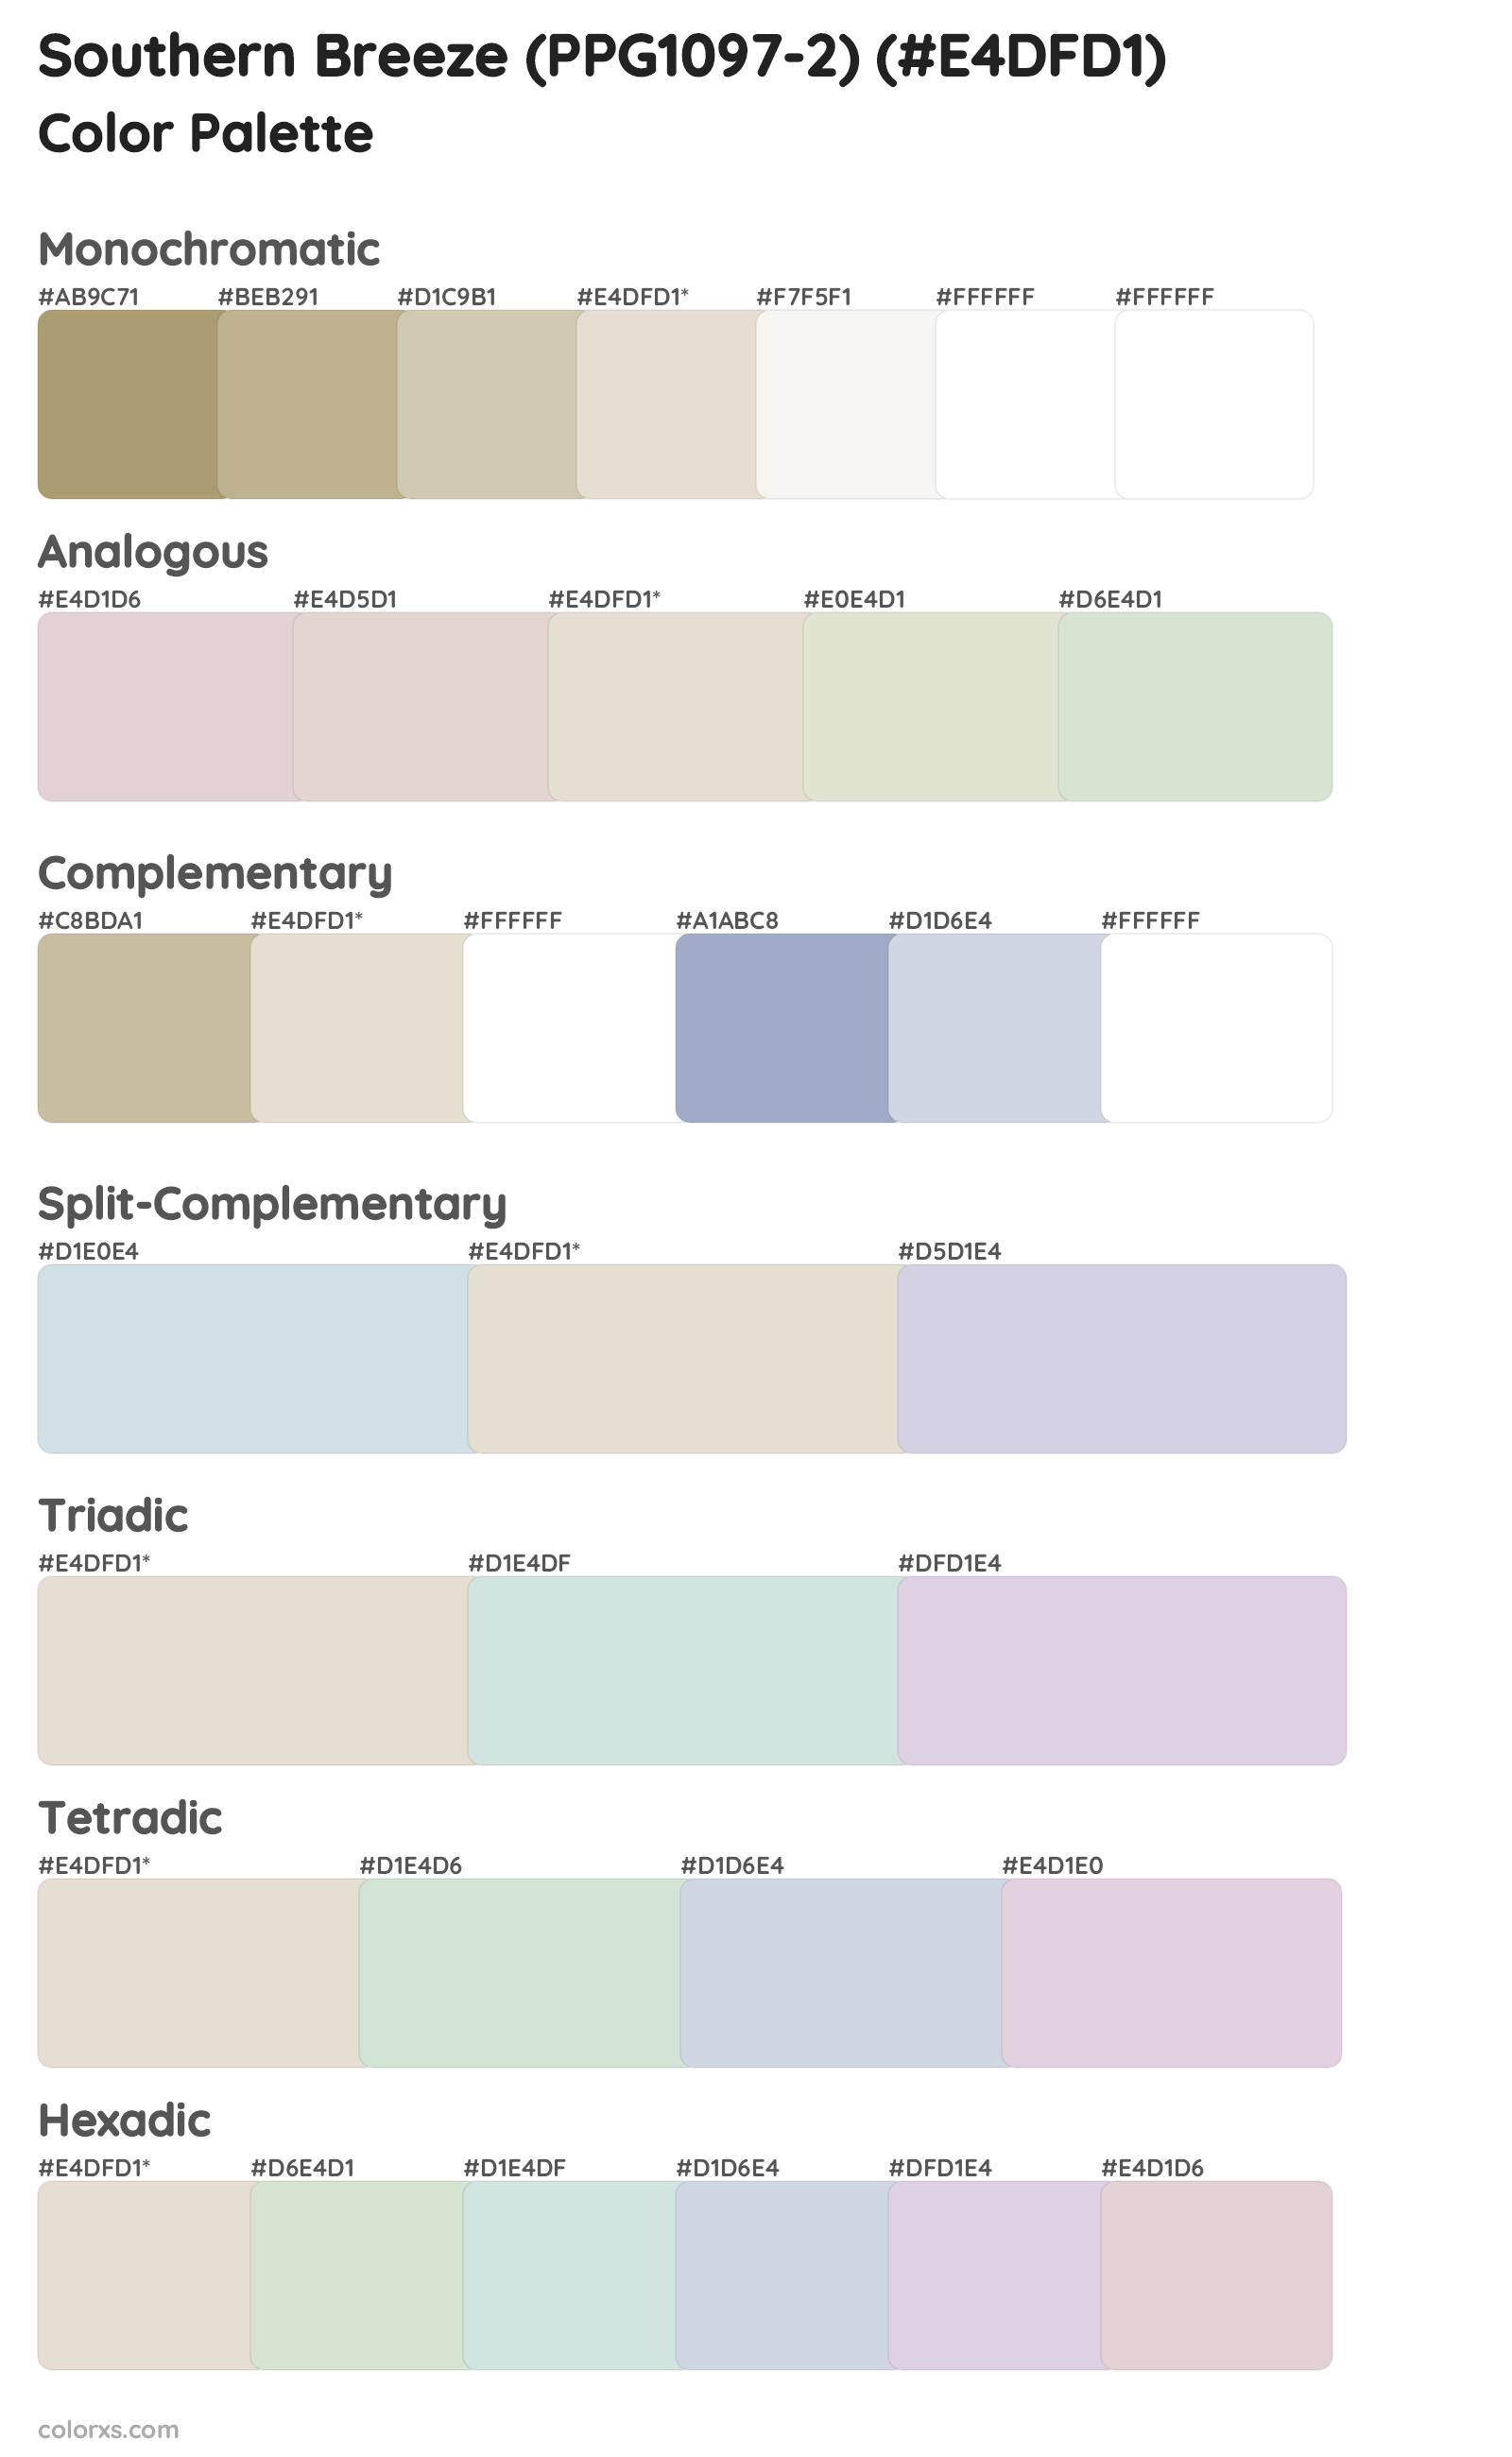 Southern Breeze (PPG1097-2) Color Scheme Palettes